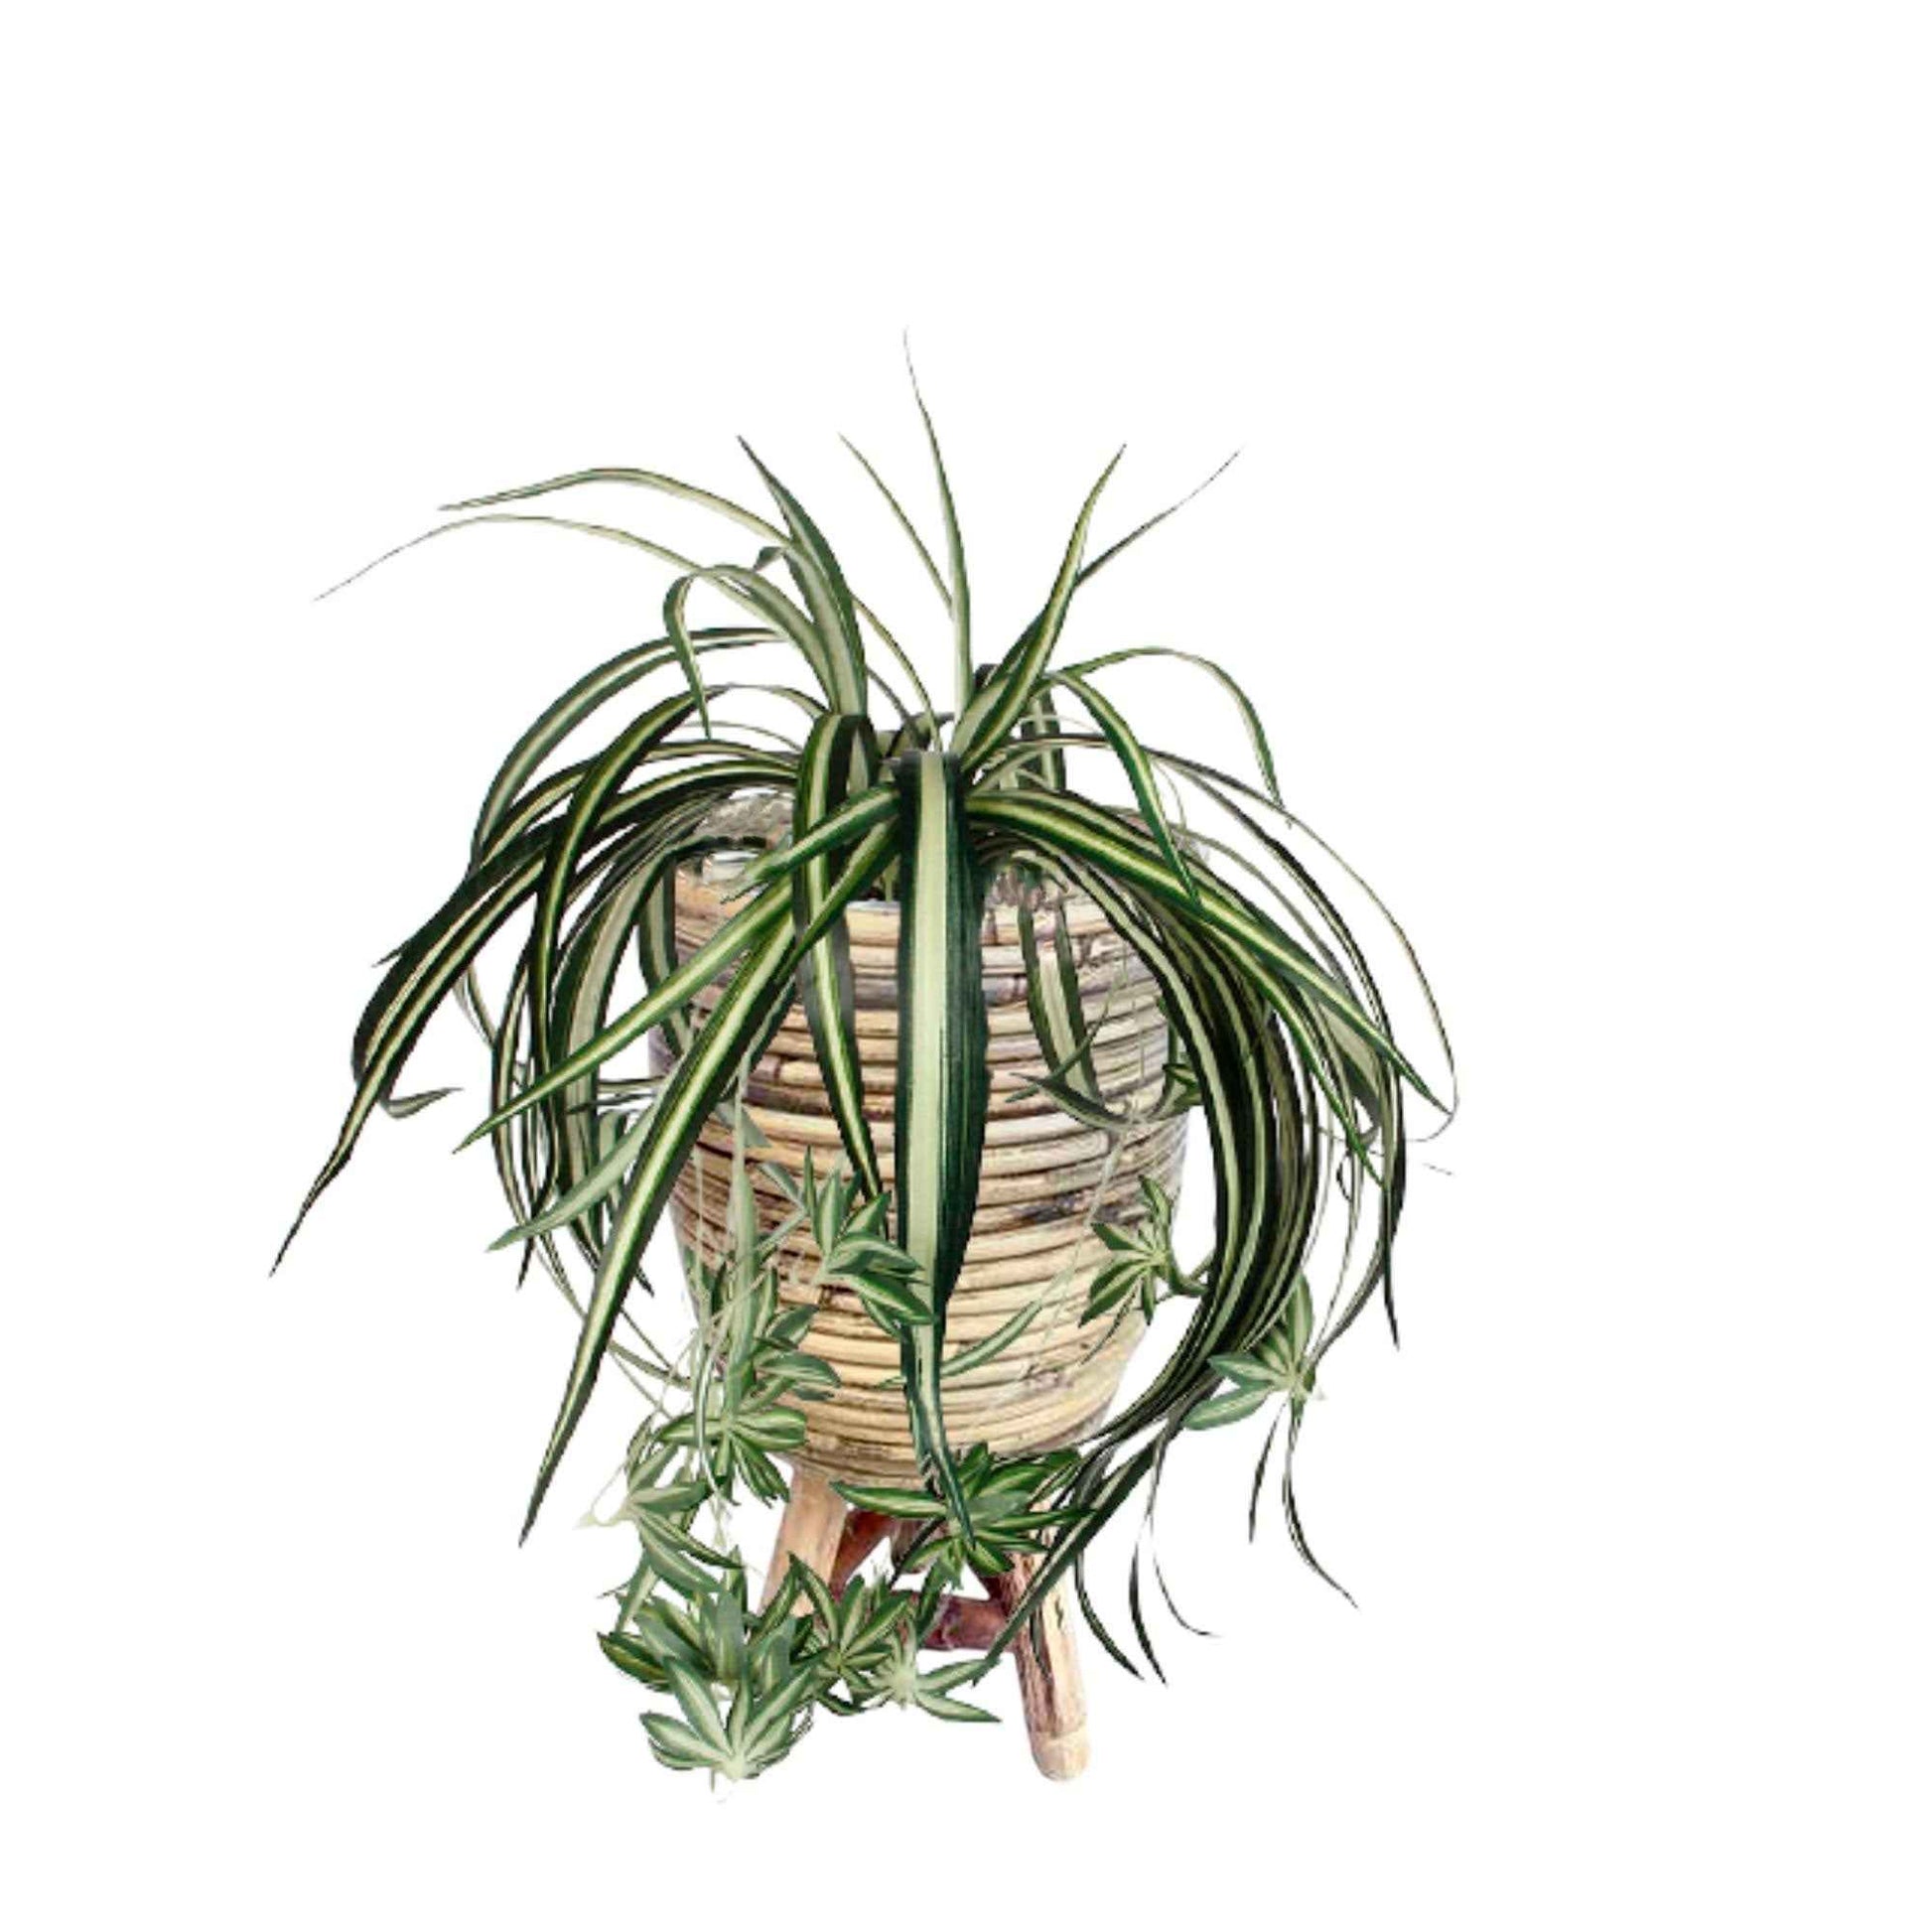 Chlorophytum artificiel à suspendre avec cache-pot marron - Ensembles de plantes artificielles